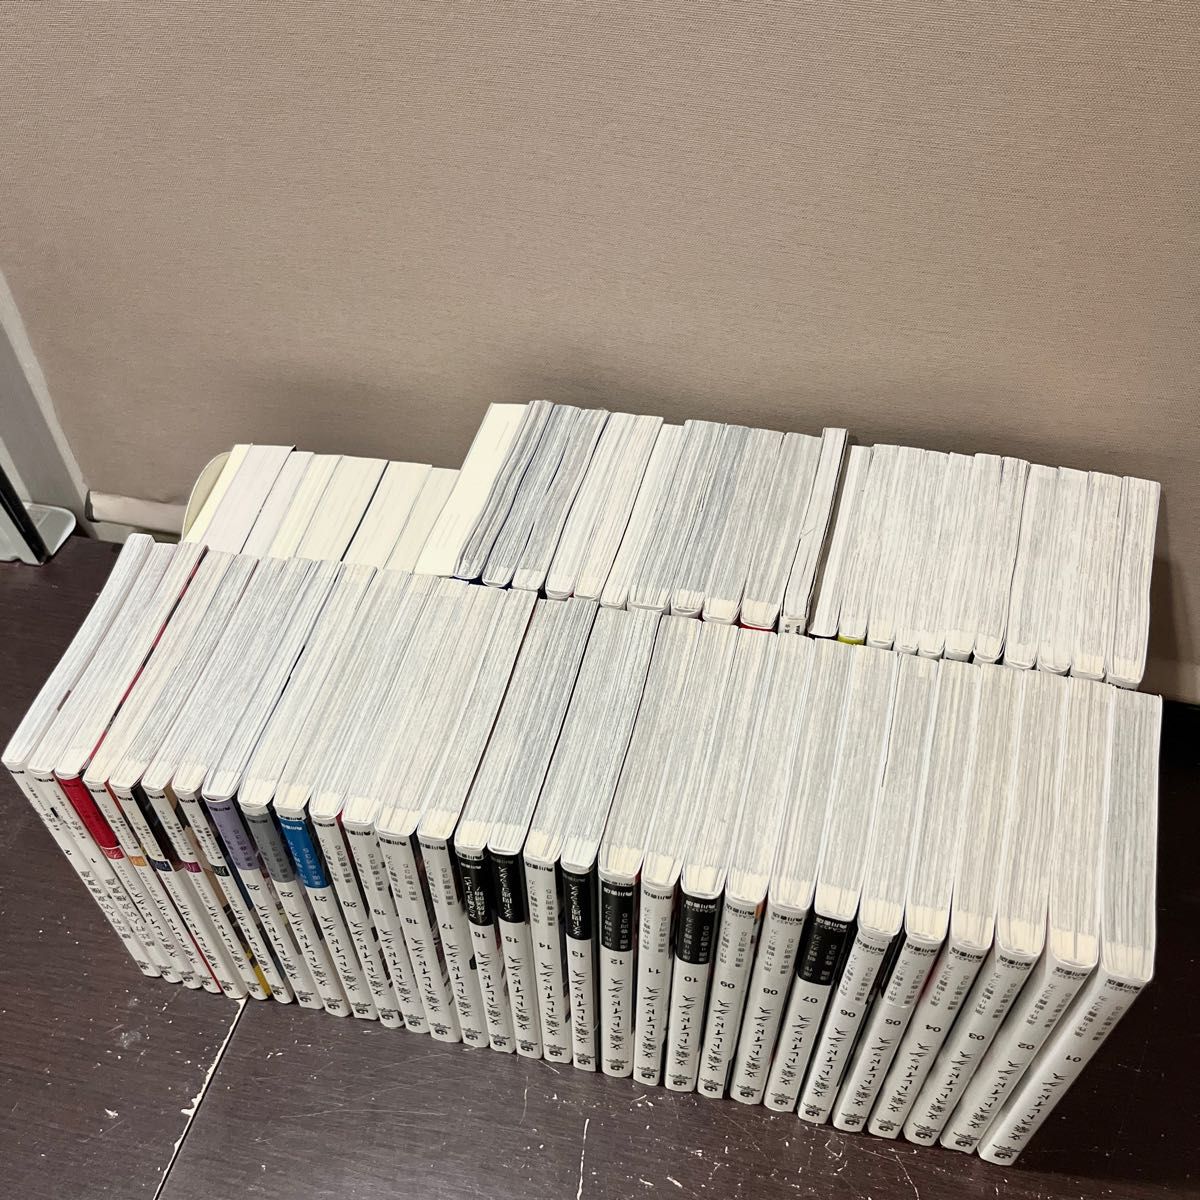 【美品多数】文豪ストレイドッグス 超豪華全63巻コンプリート全巻セット